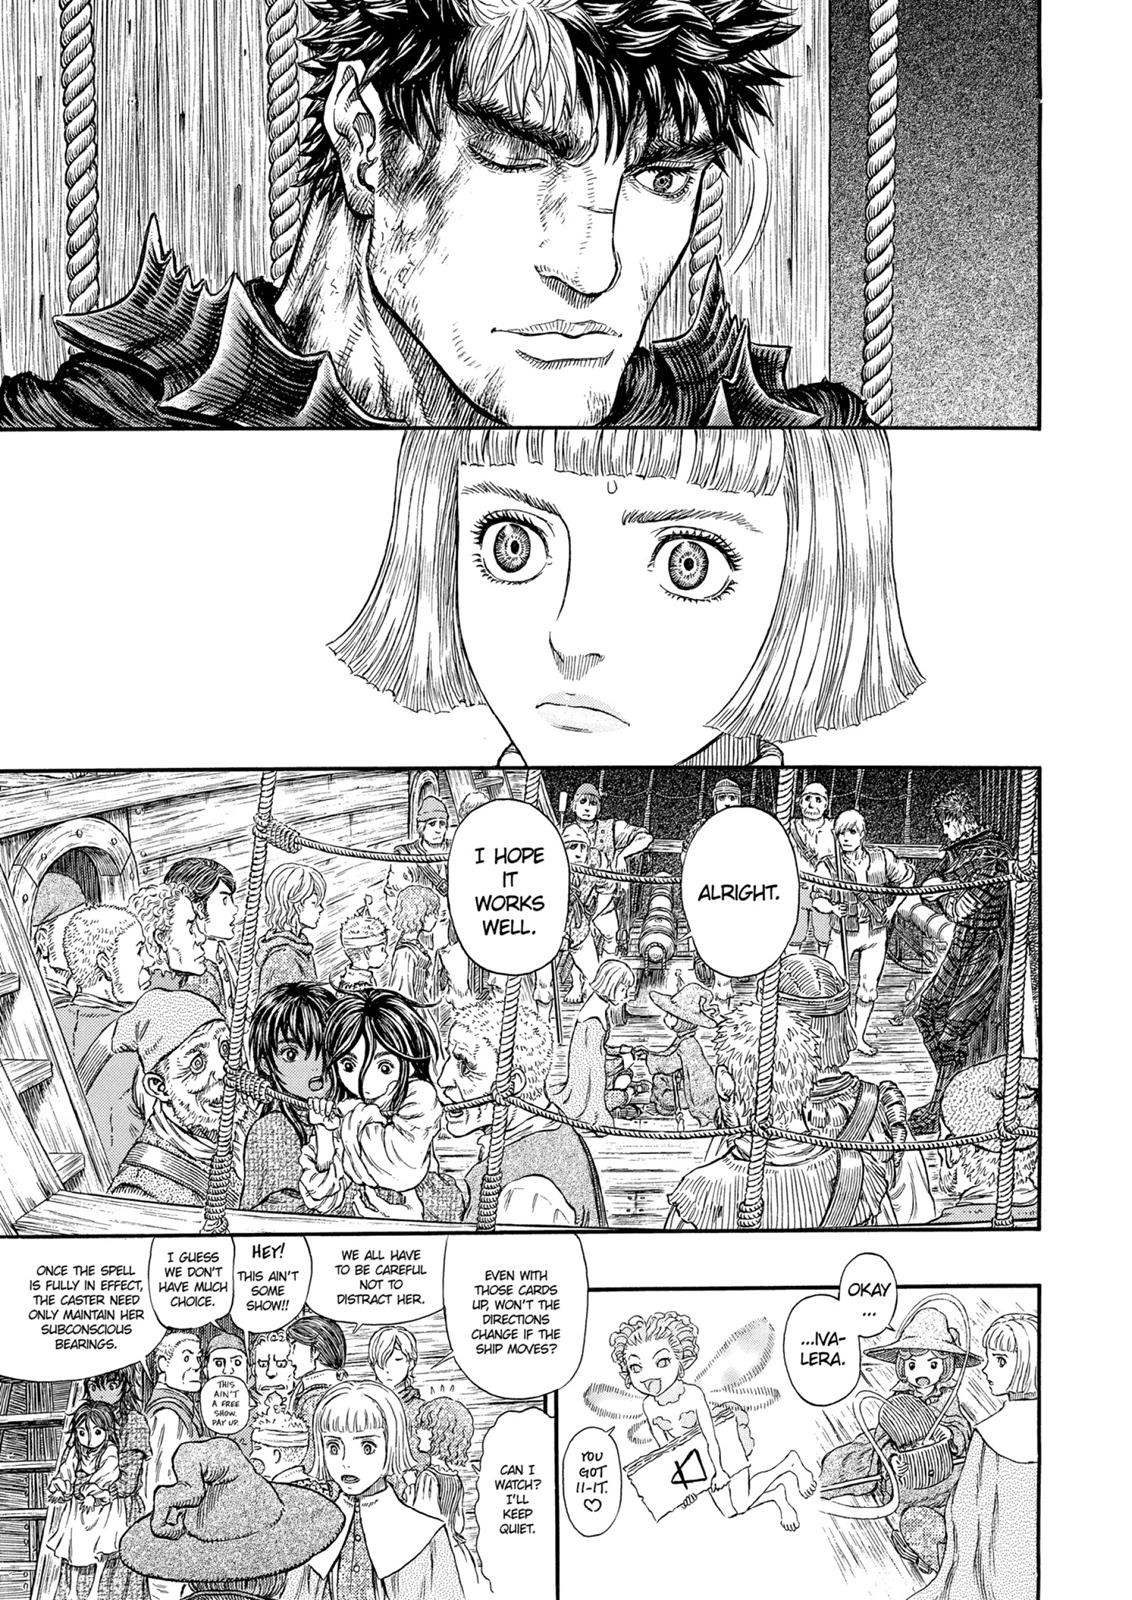 Berserk Manga Chapter 317 image 22